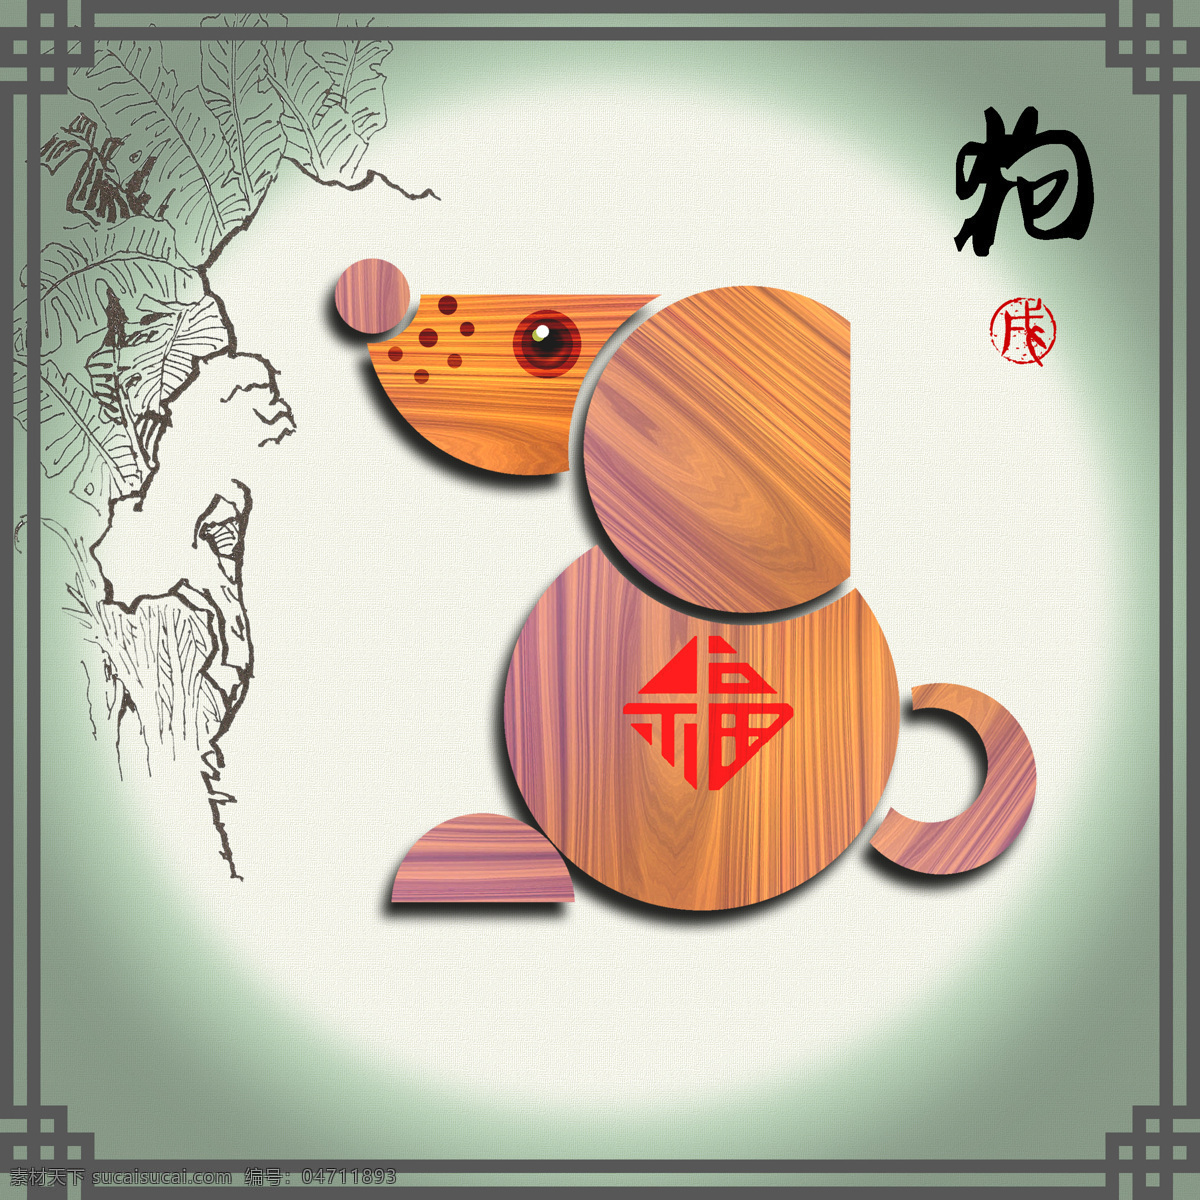 十二生肖 狗 设计图 传统文化 中国元素 天干 地支 木纹 装饰画 高清 特色设计 文化艺术